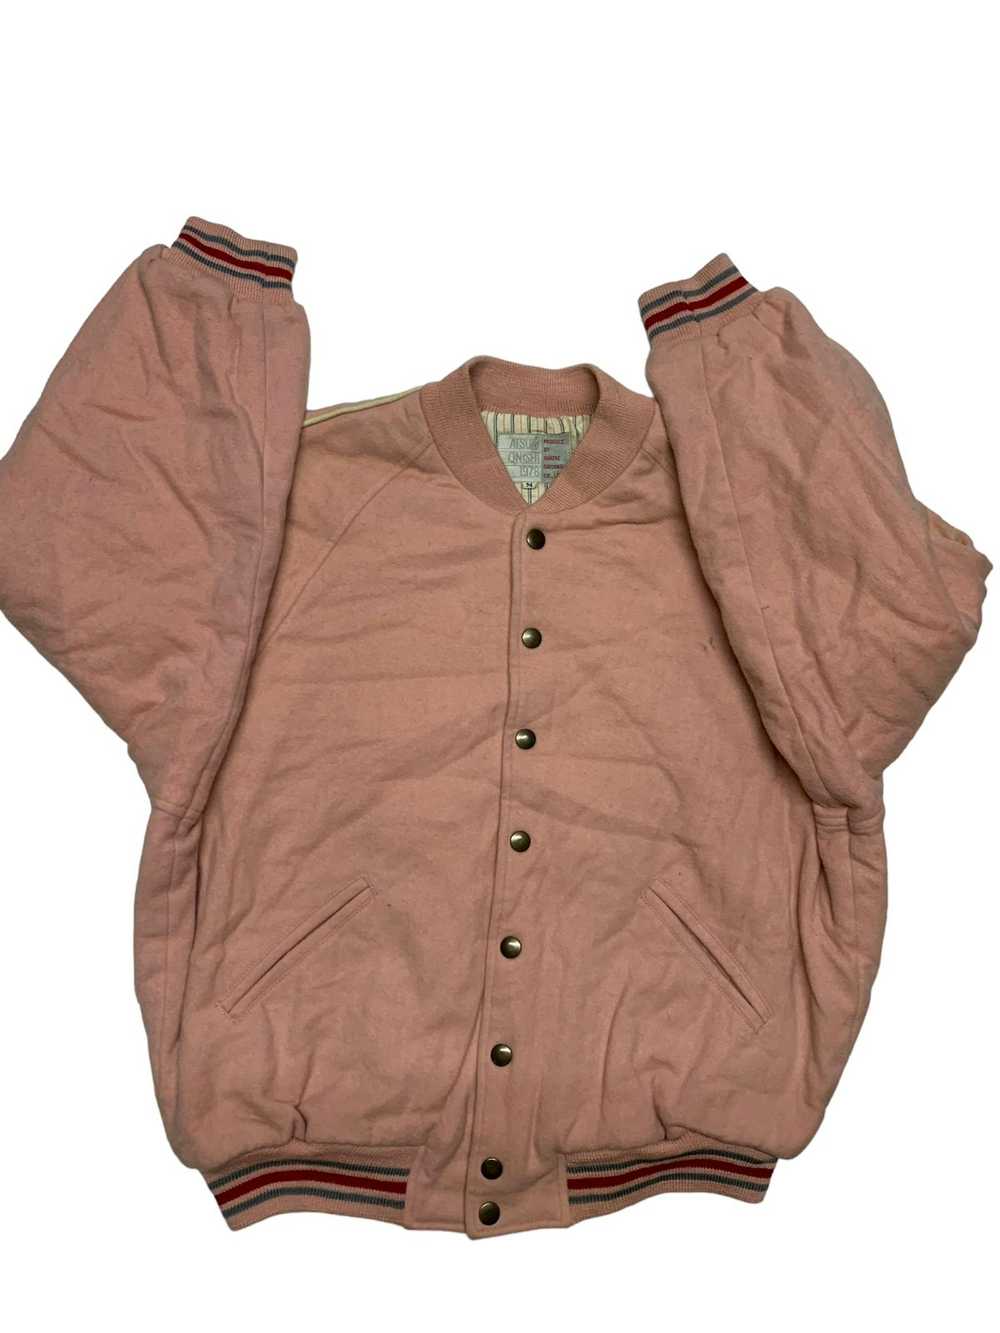 Varsity Jacket Atsuki onishi 1978 produce by quat… - image 4